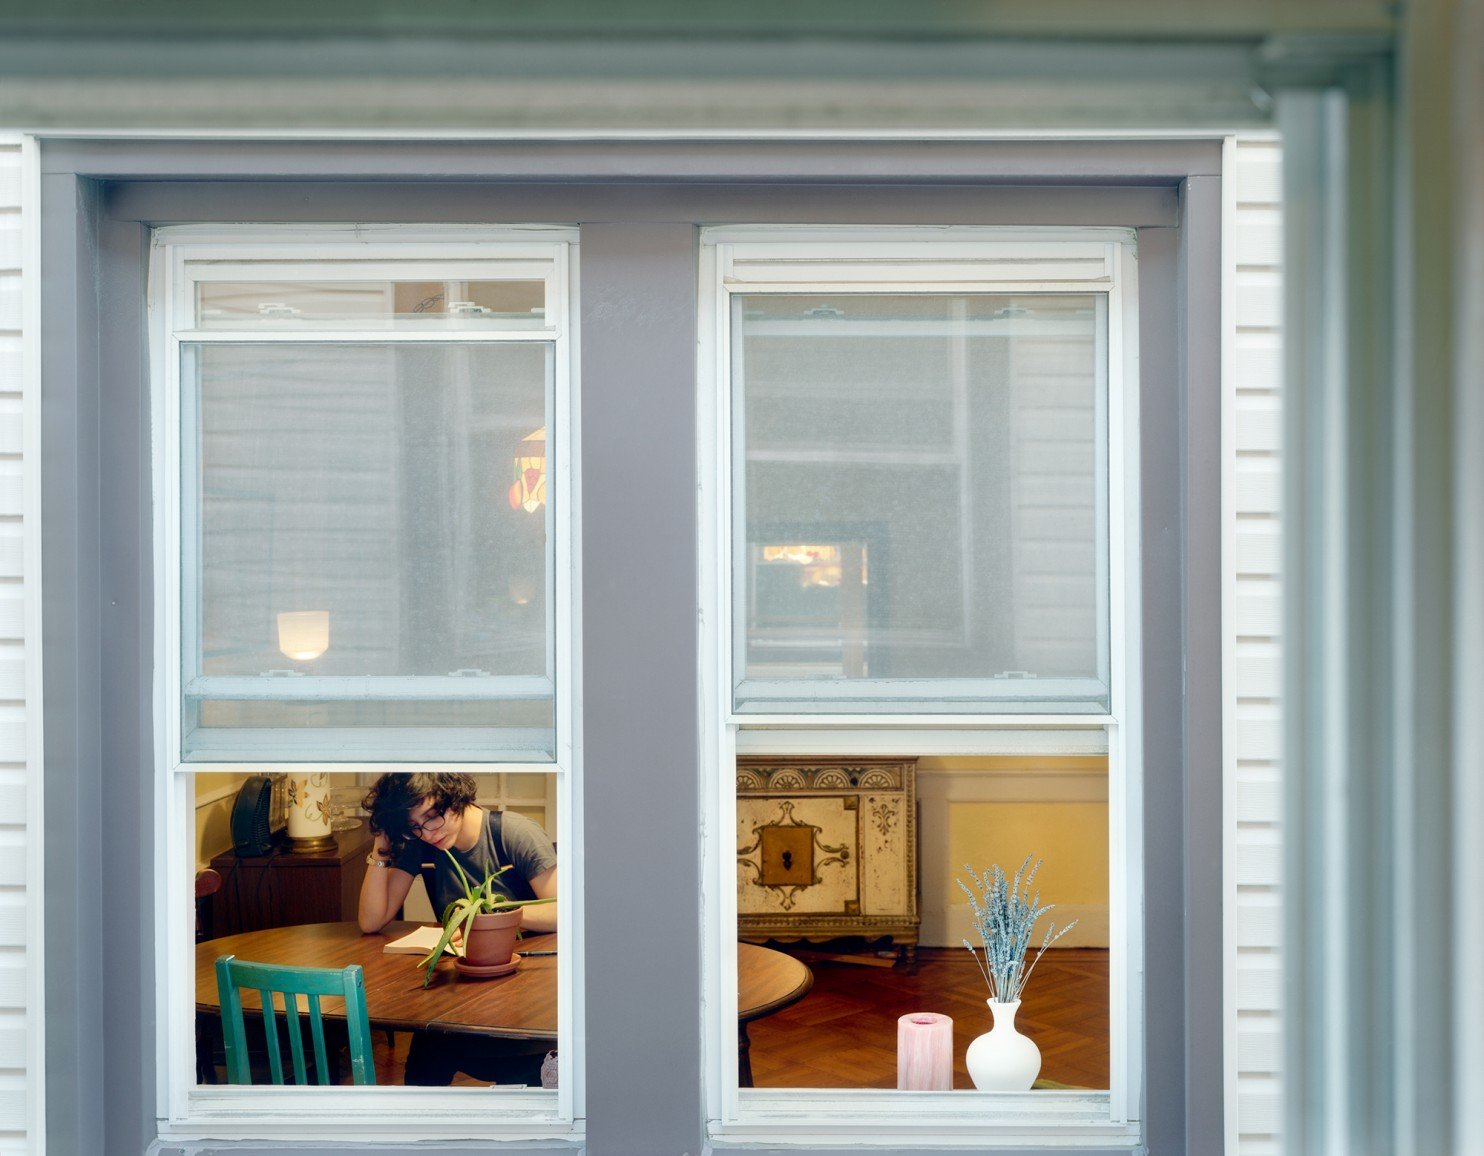 Gail AlbertHalaban 2 Fotografie, 'spiando' al di là di una finestra: la Milano del Coronavirus e non solo